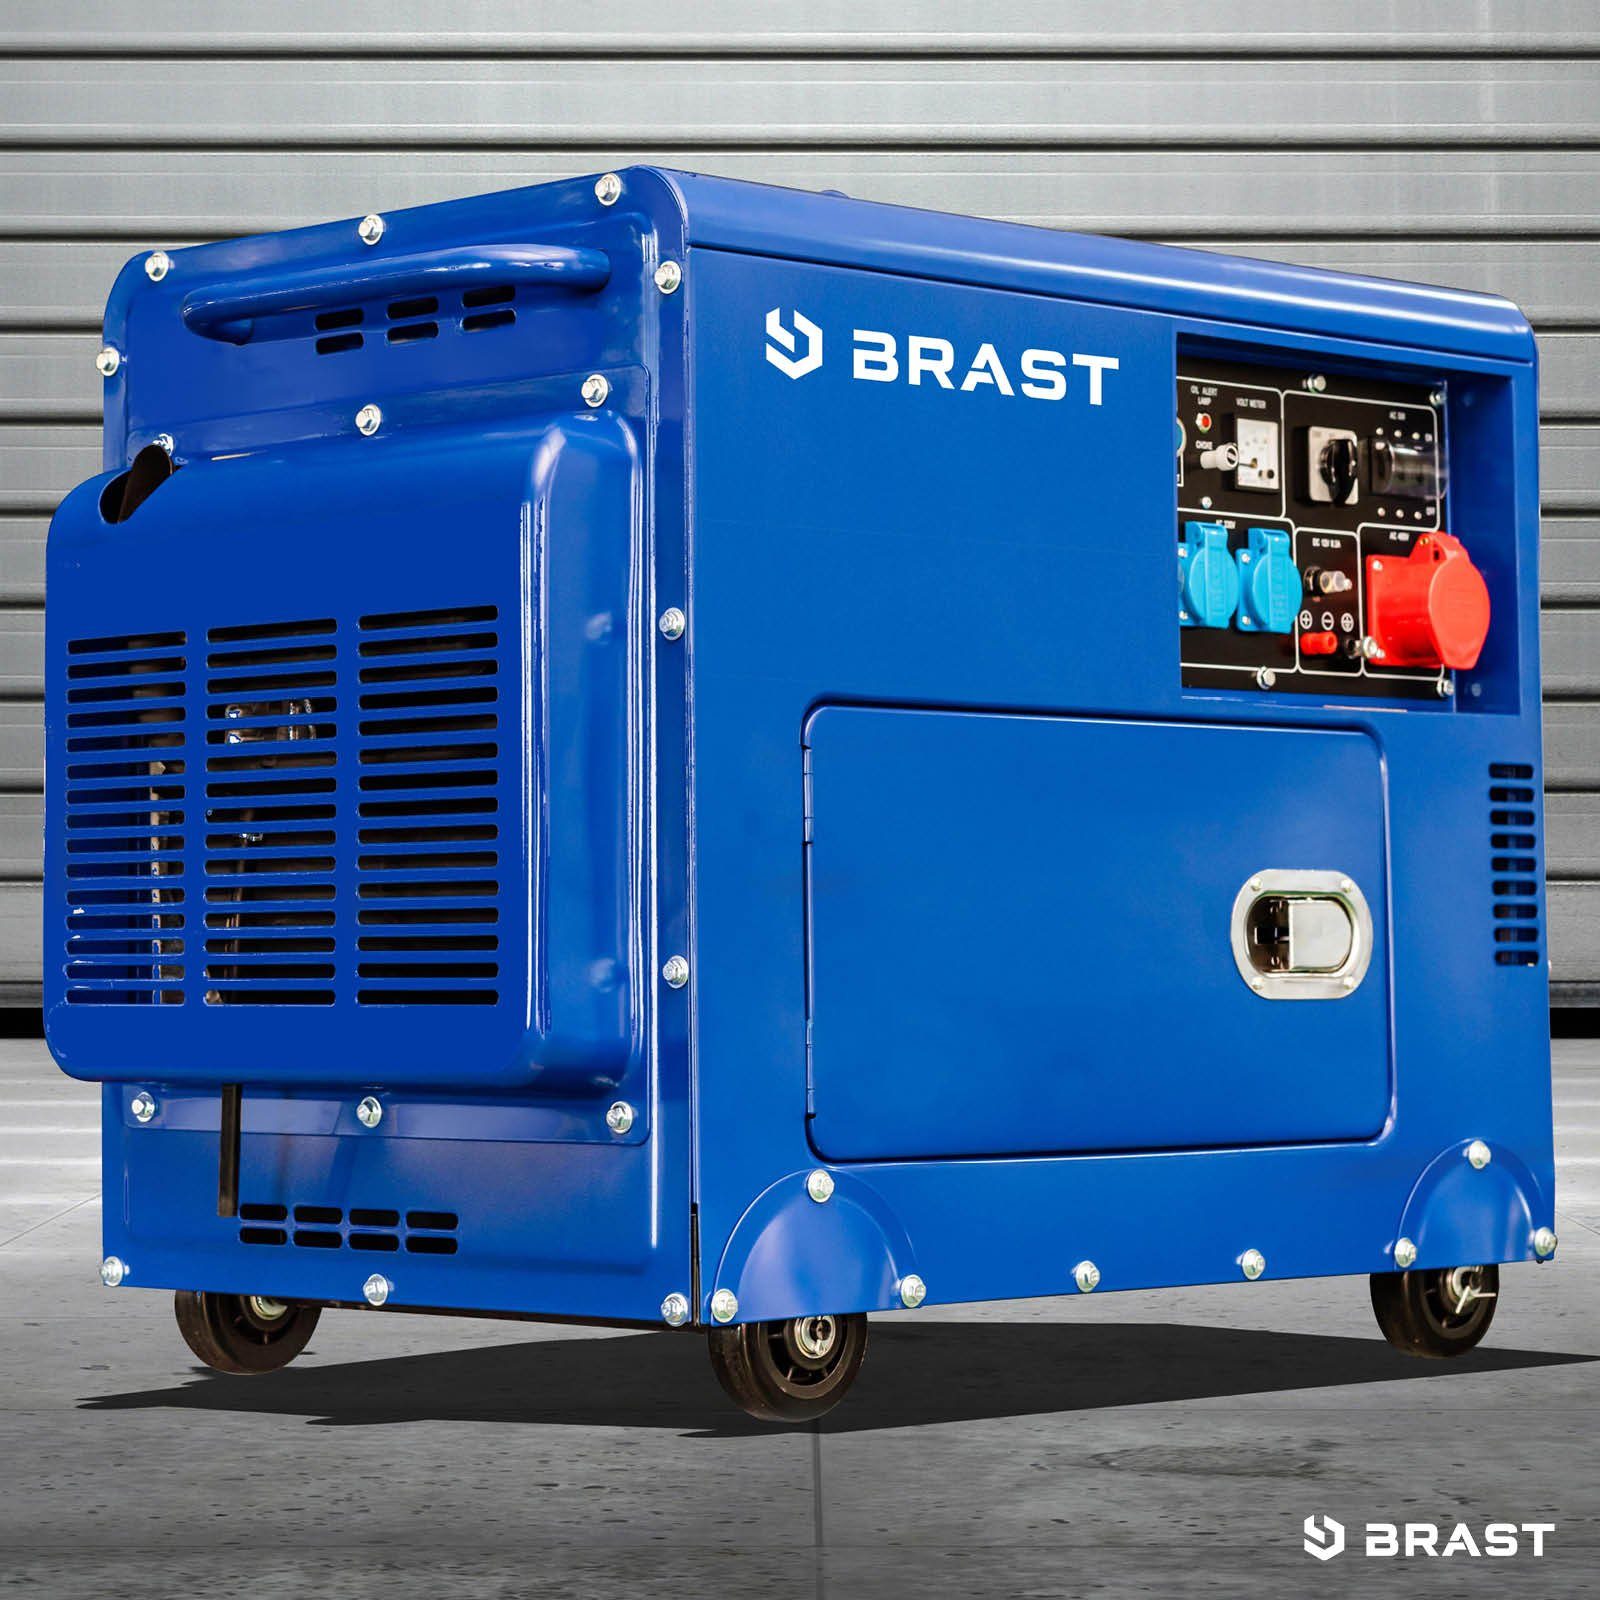 BRAST Stromerzeuger Diesel (7,7PS) 5000 418cm³ Einsatz Laufzeit), lange für 5,7kW Anschlüsse Stromgenerator 4-Takt-Dieselmotor Generator E-Start, (Zahlreiche Watt flexiblen mit